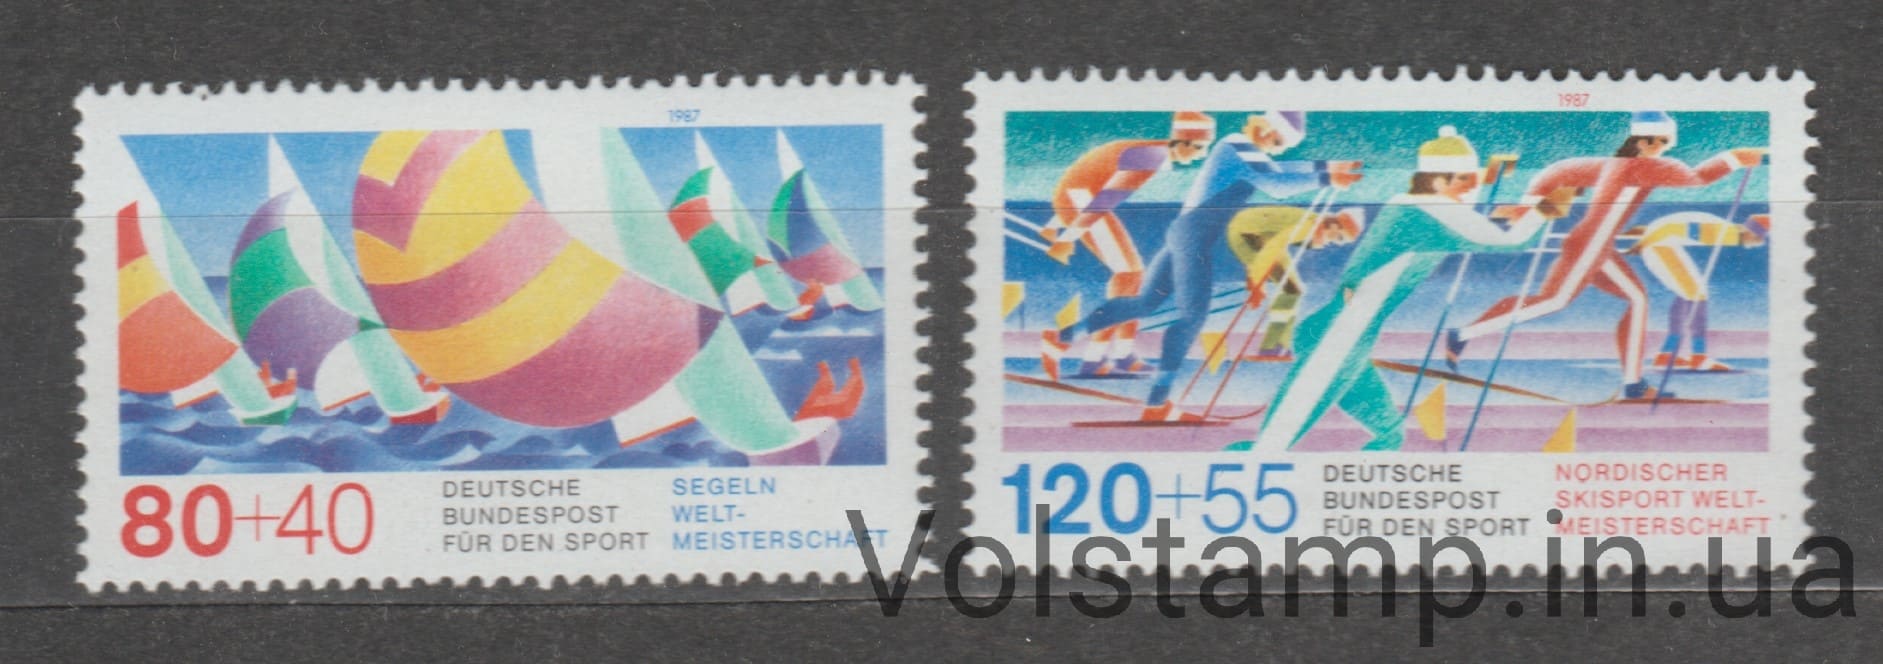 1987 Германия, Федеративная Республика Серия марок (Спортивная помощь, корабли) MNH №1310-1311